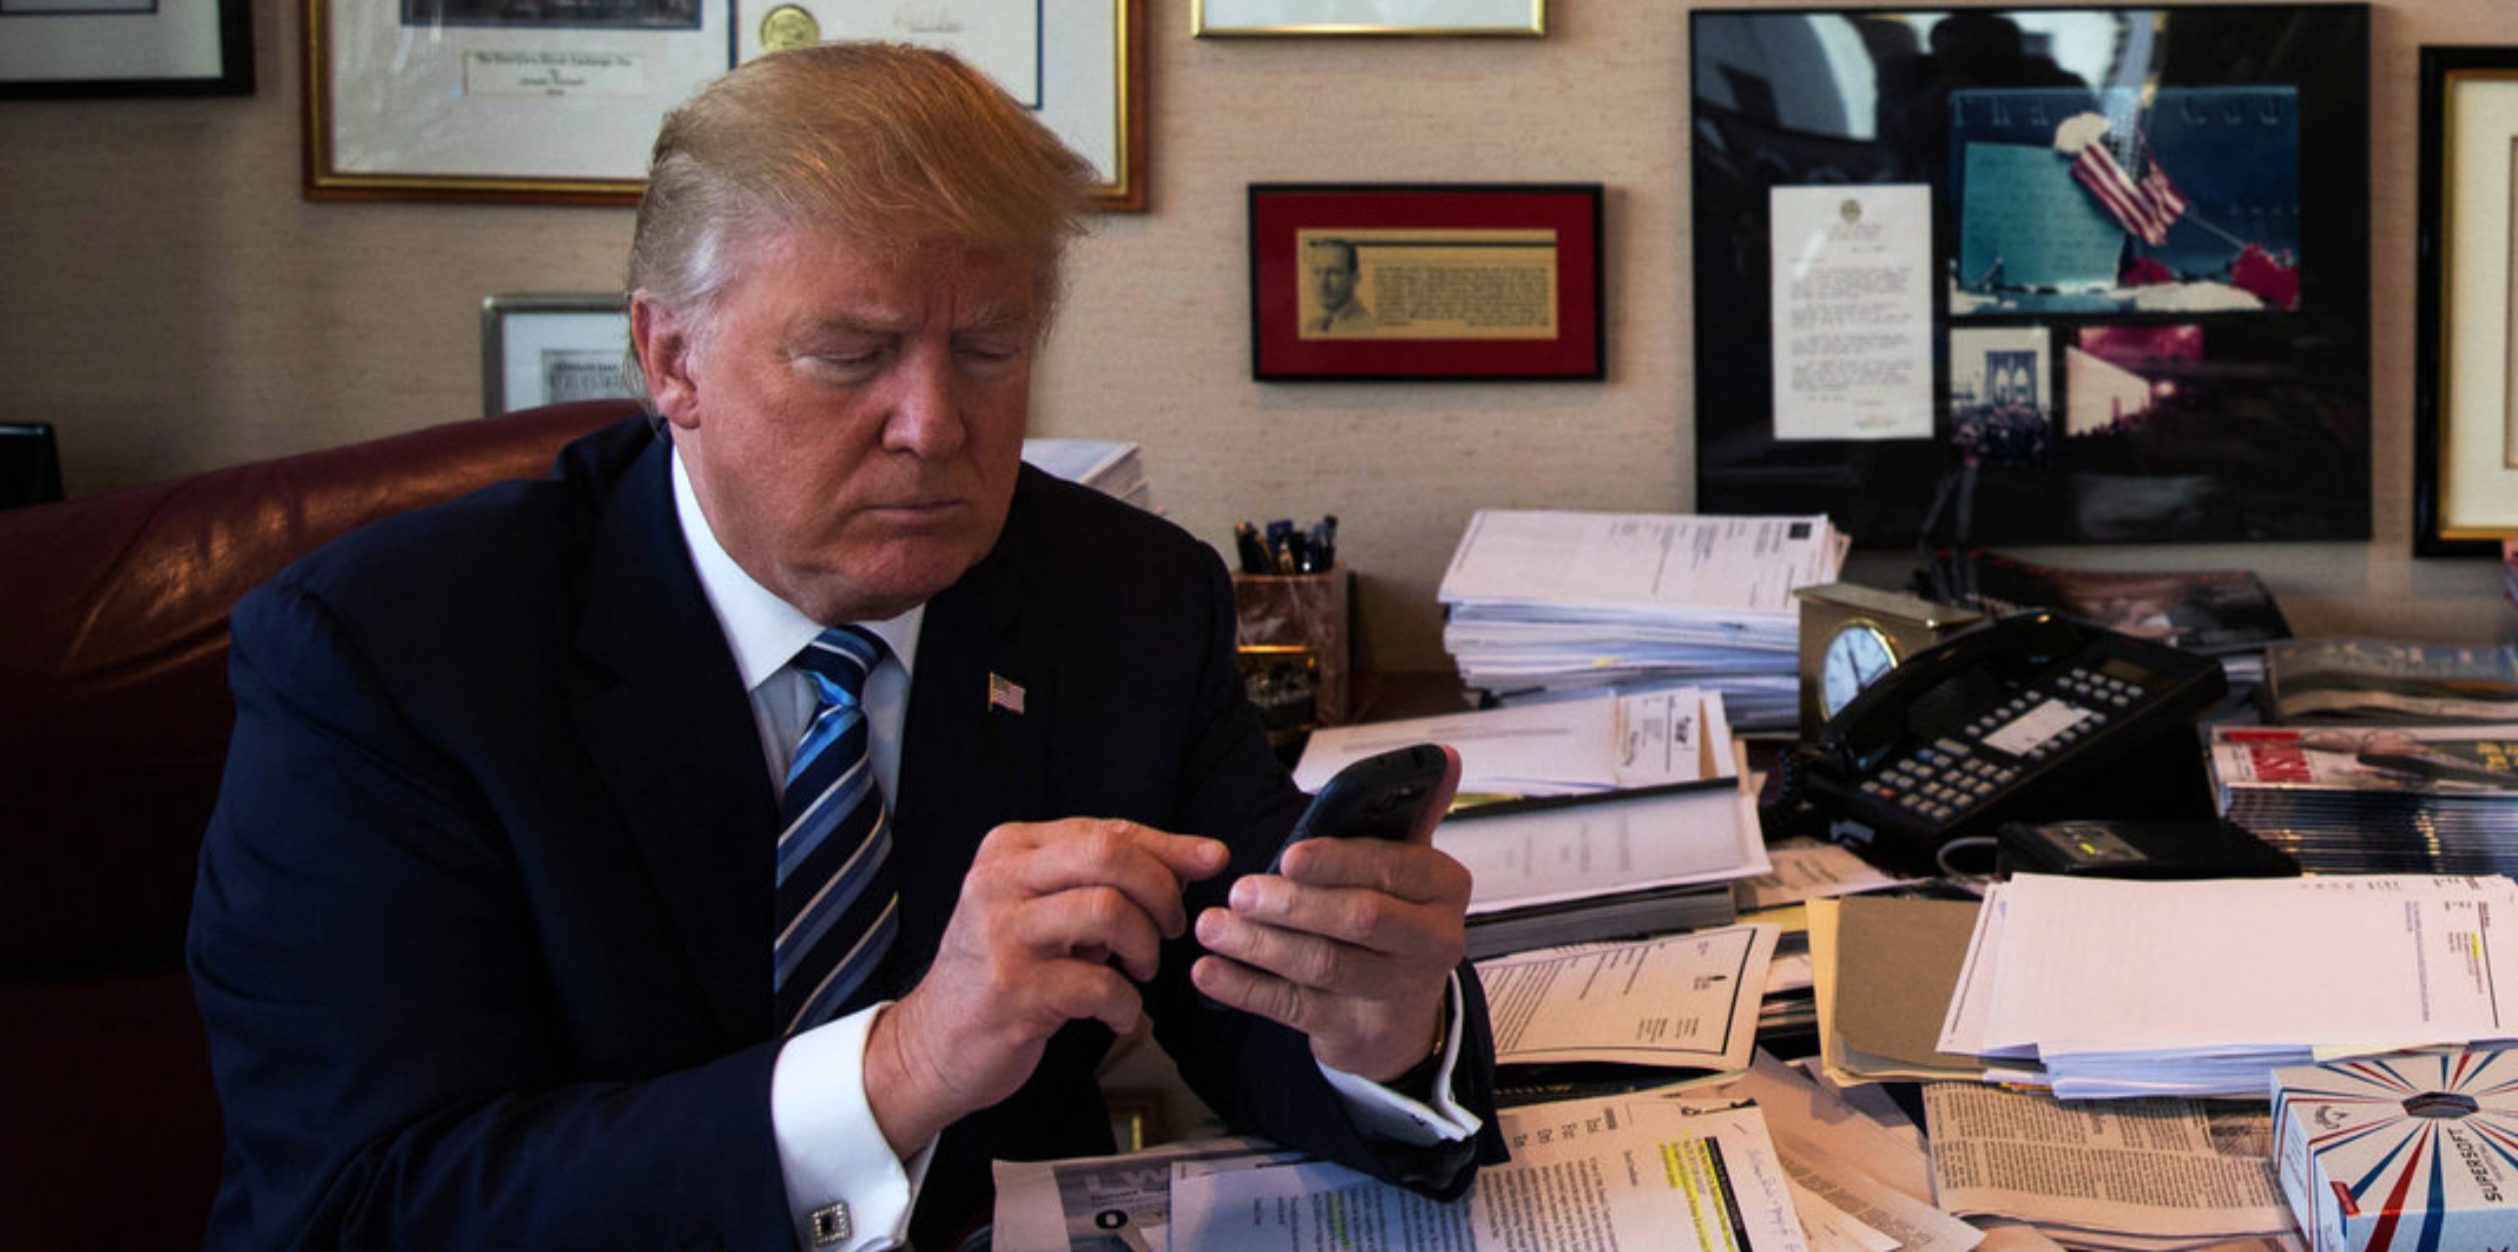 Darum löscht Twitter keine Tweets von Donald Trump